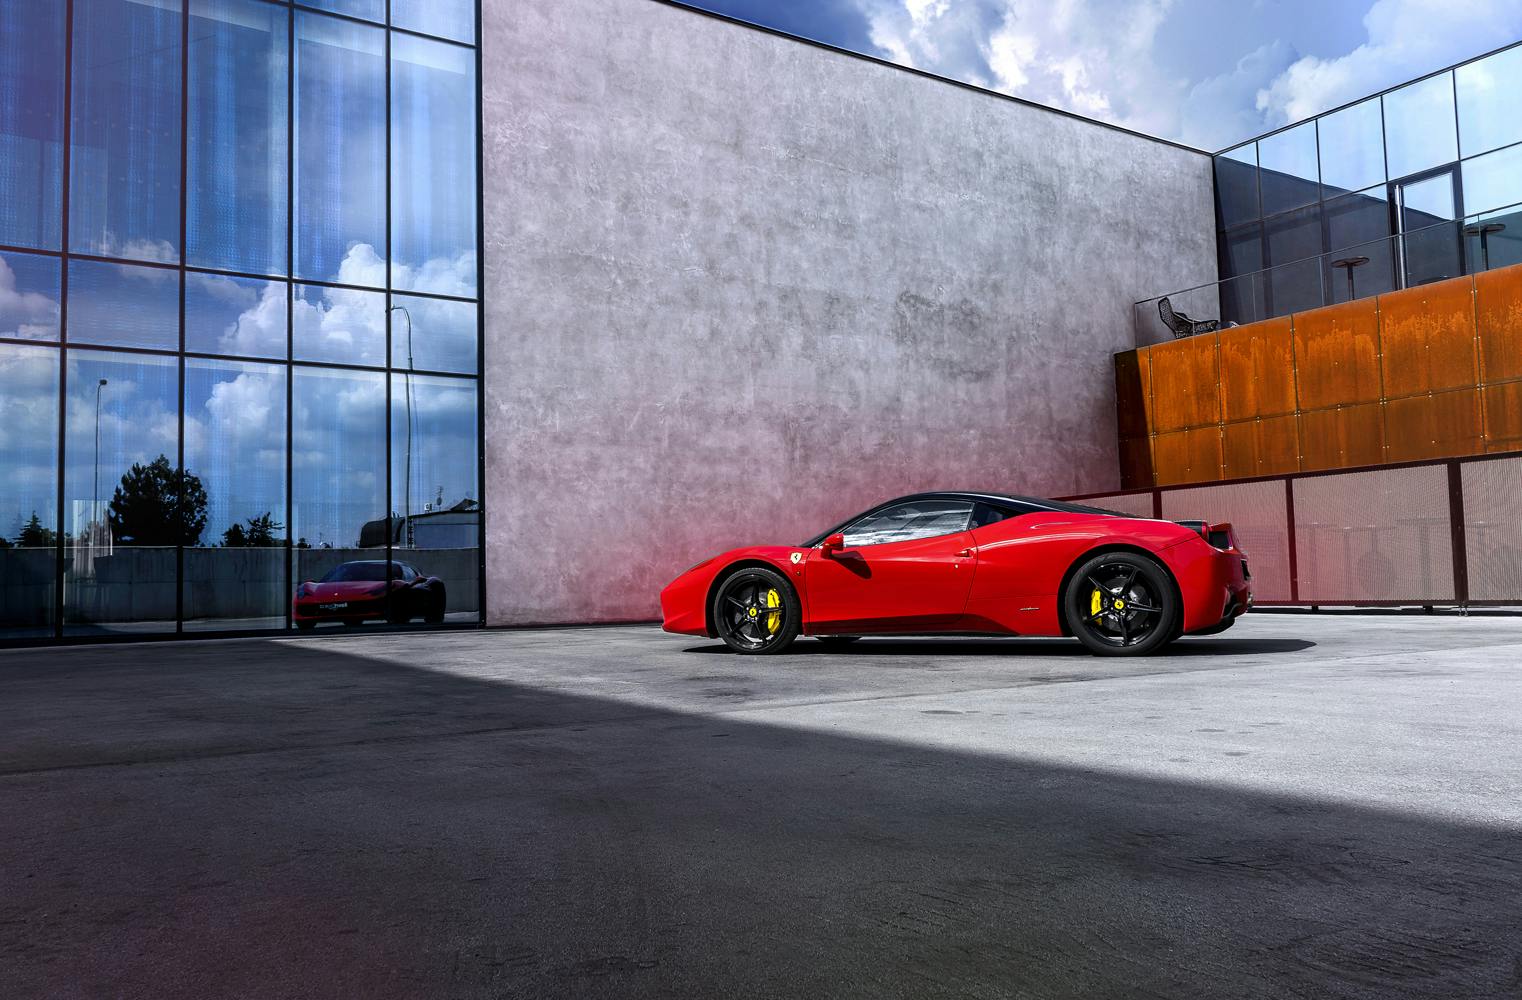 Ferrari selber fahren | Ferrari 458 Italia probefahren